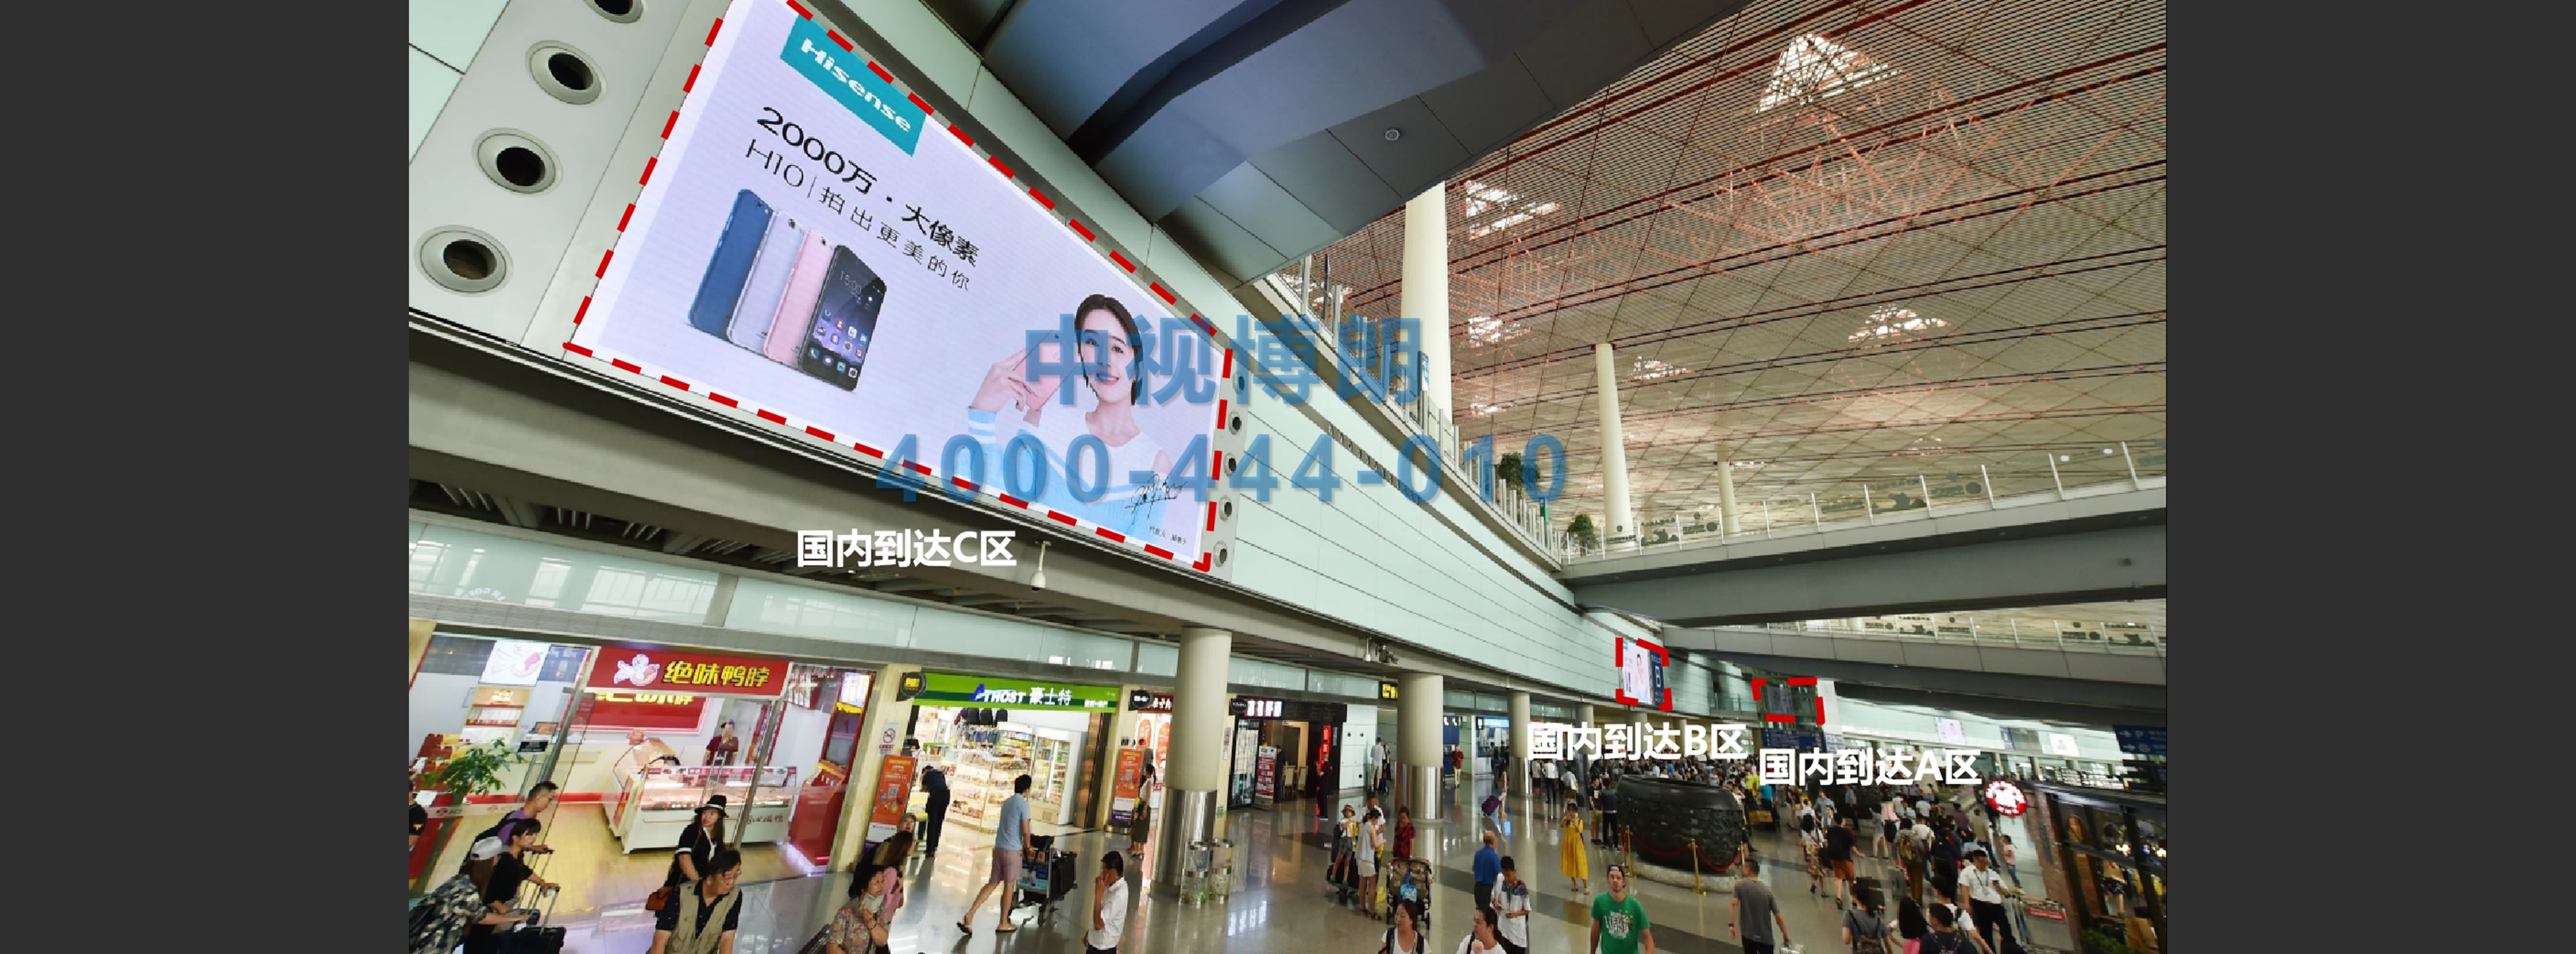 北京首都机场广告-T3C到达出口3台LED屏套装